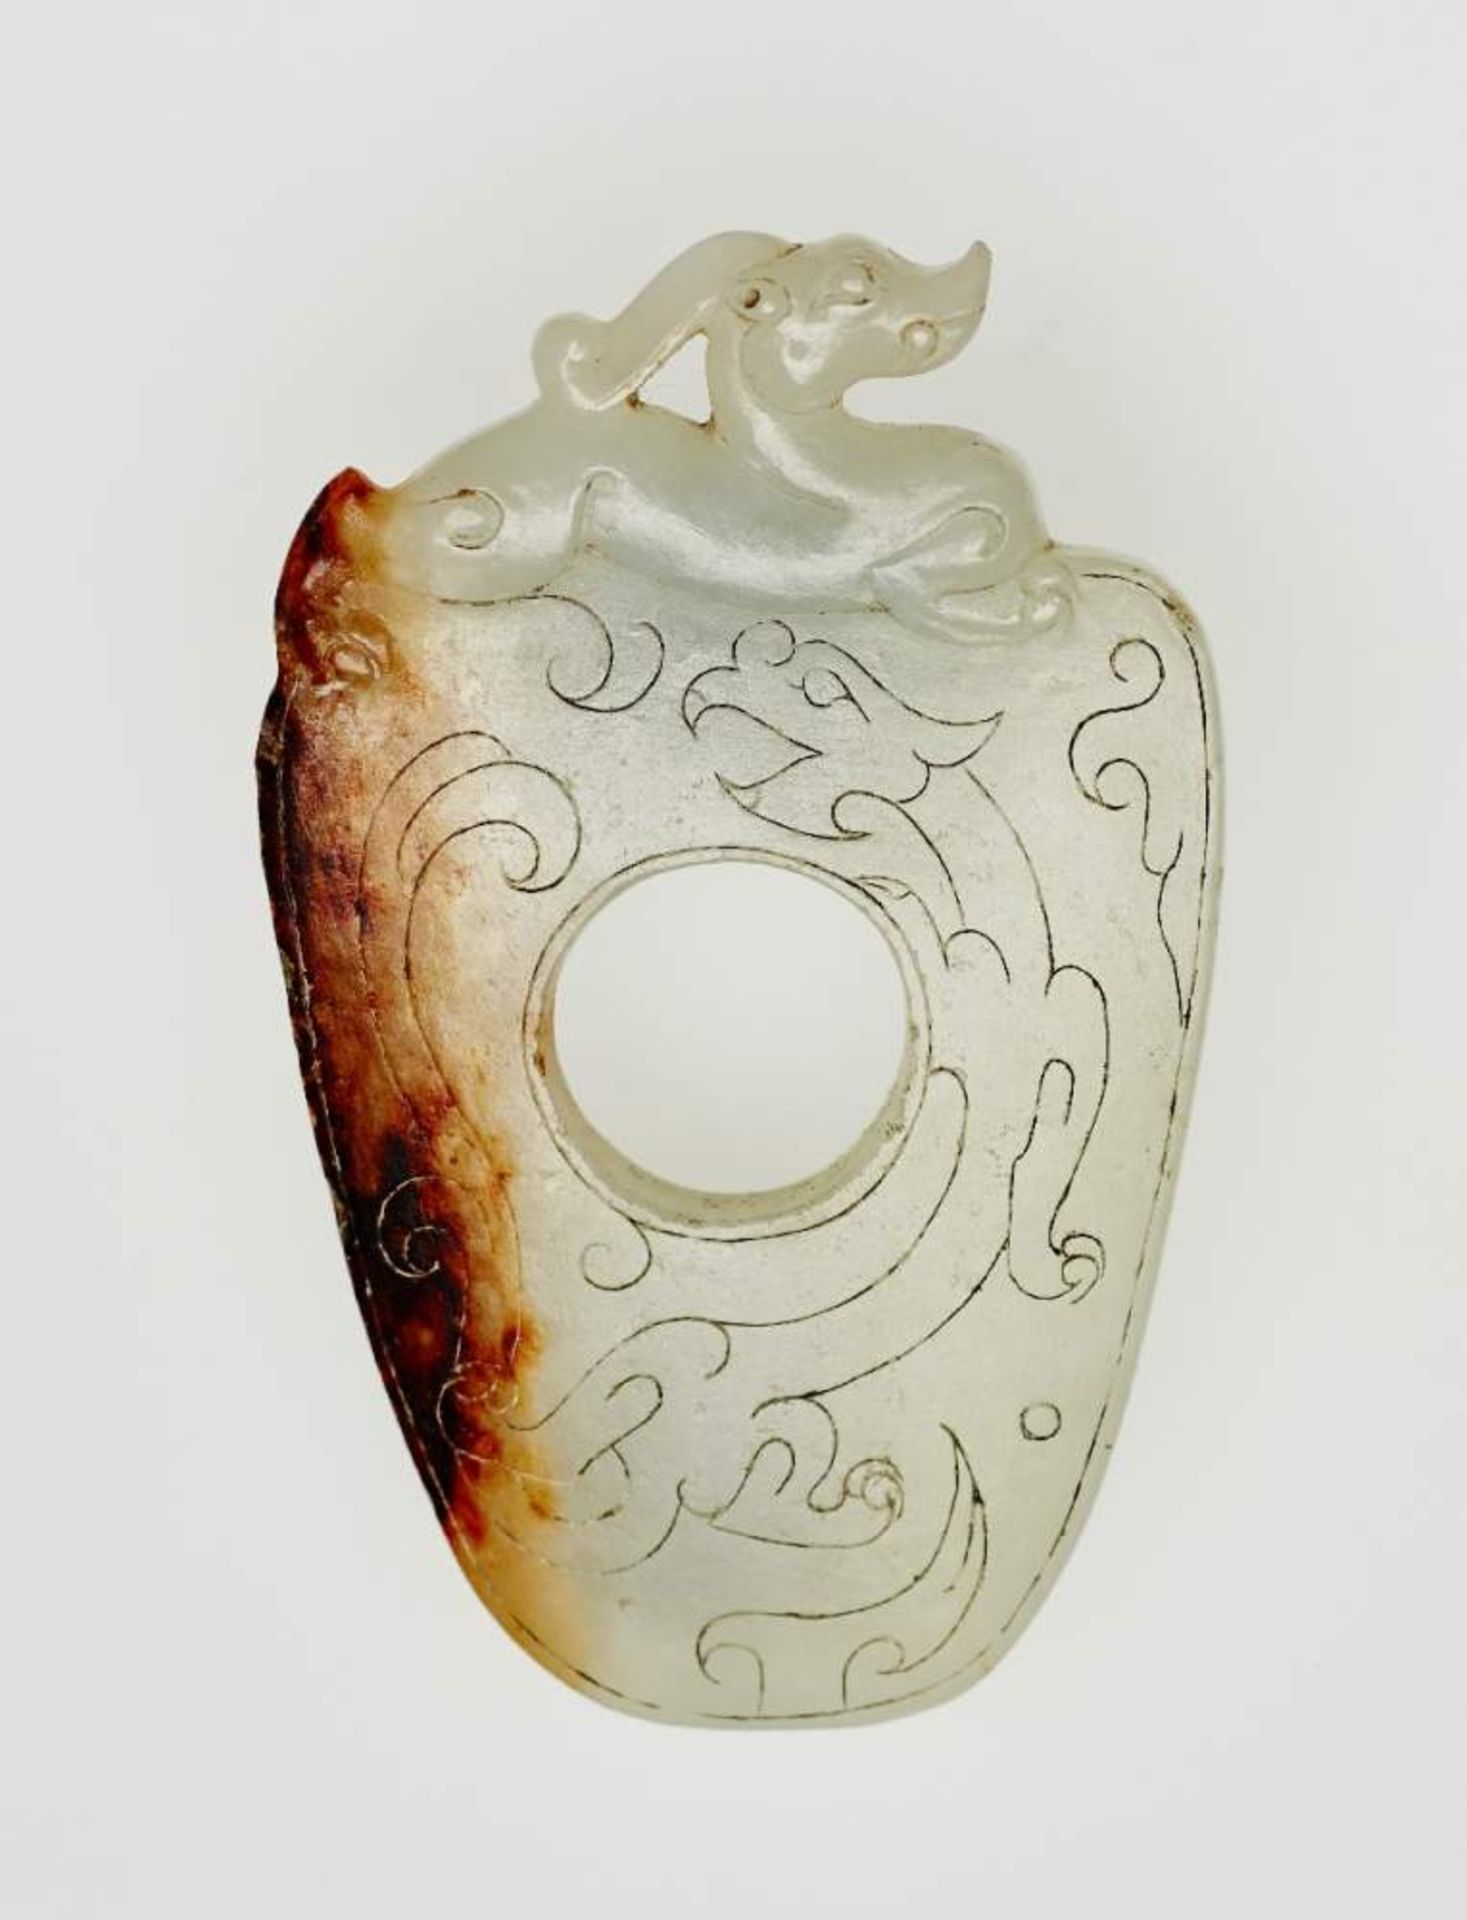 DAUMENSCHUTZ SHE UND DRACHEJade. China, Qing-Dynastie, 19. Jh.Die Form dieses aparten Jadeamuletts